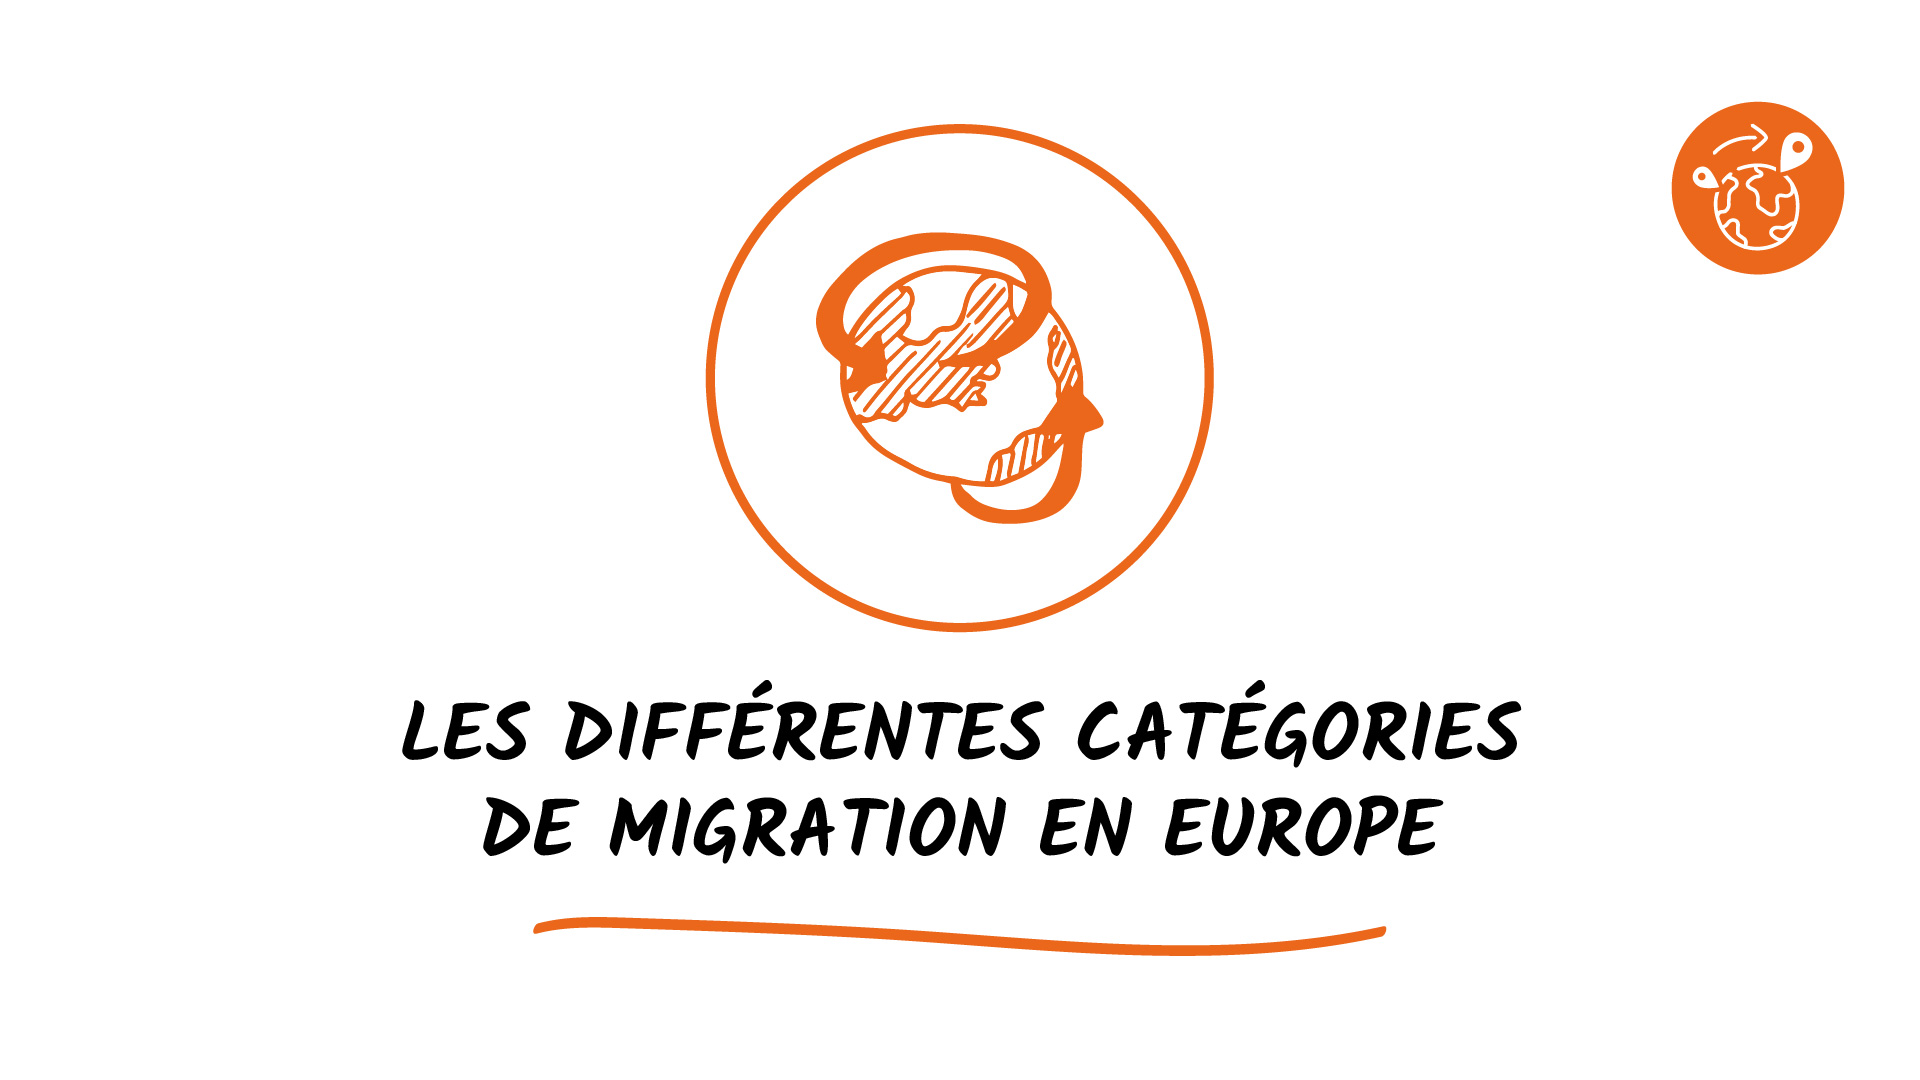 Les différentes catégories de migration en Europe